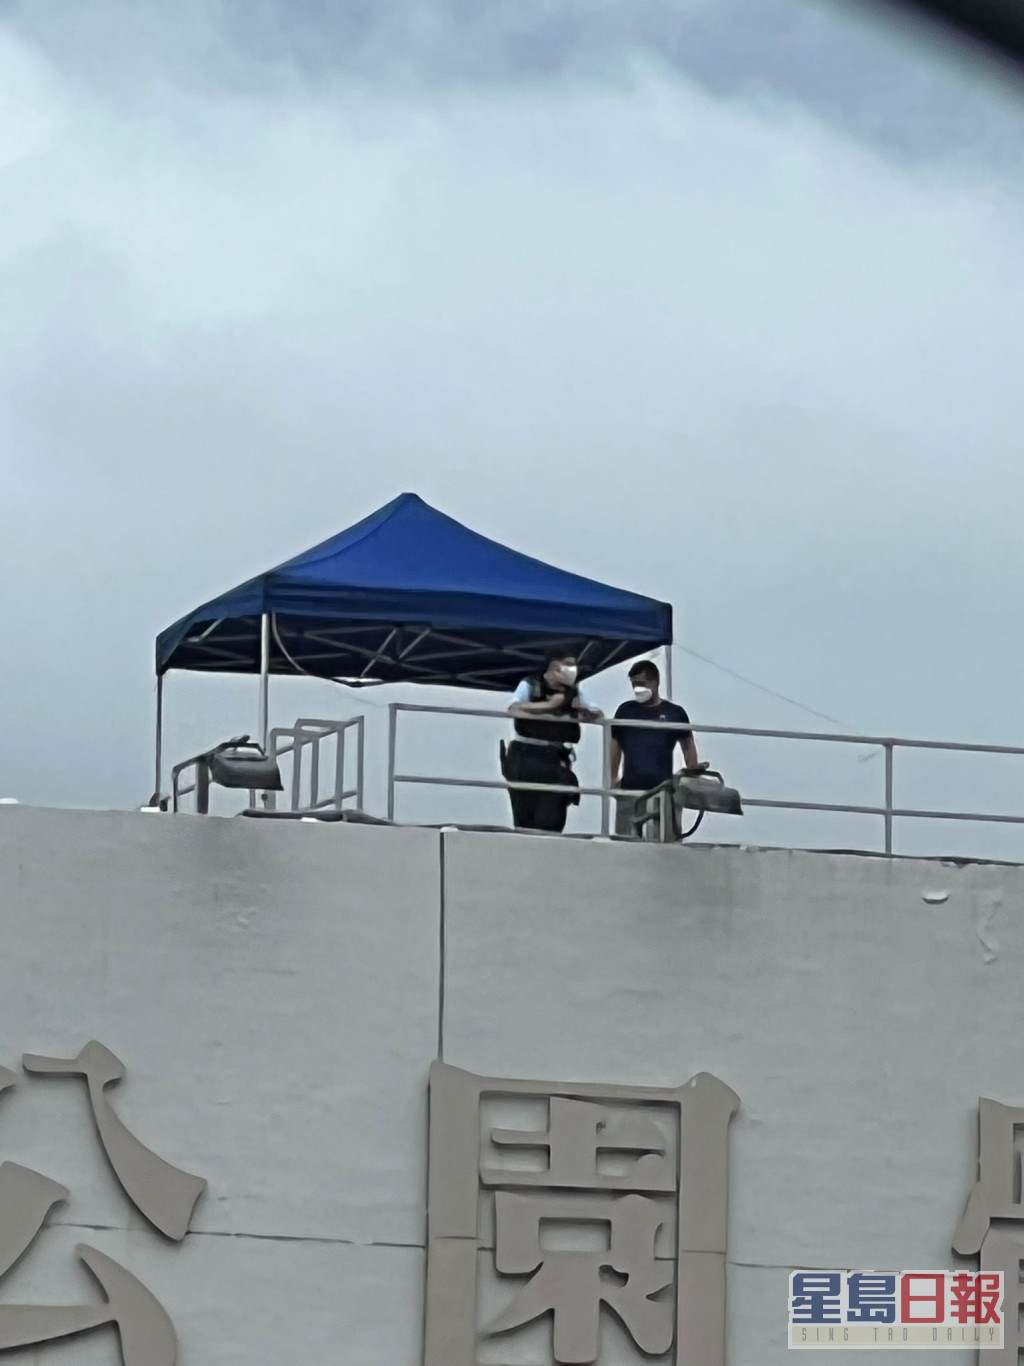 警員在中山紀念公園天台高空監視。